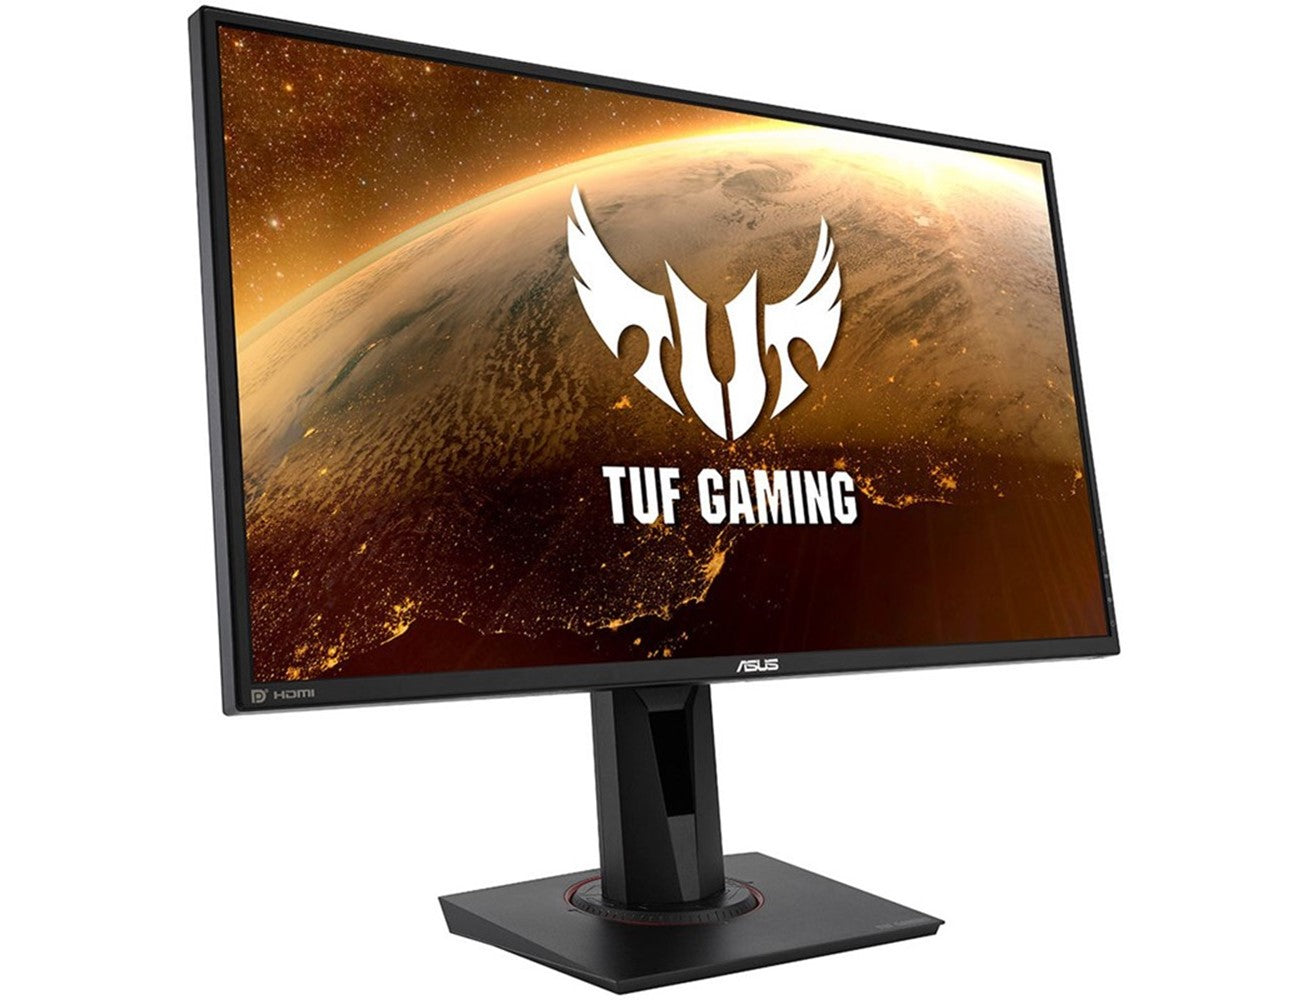 اسوس شاشة ألعاب  TUF Gaming VG279QM، شاشة 27 بوصة فل اتش دي, معدل تحديث 280 هرتز، 1 مللي ثانية، HDR - أسود